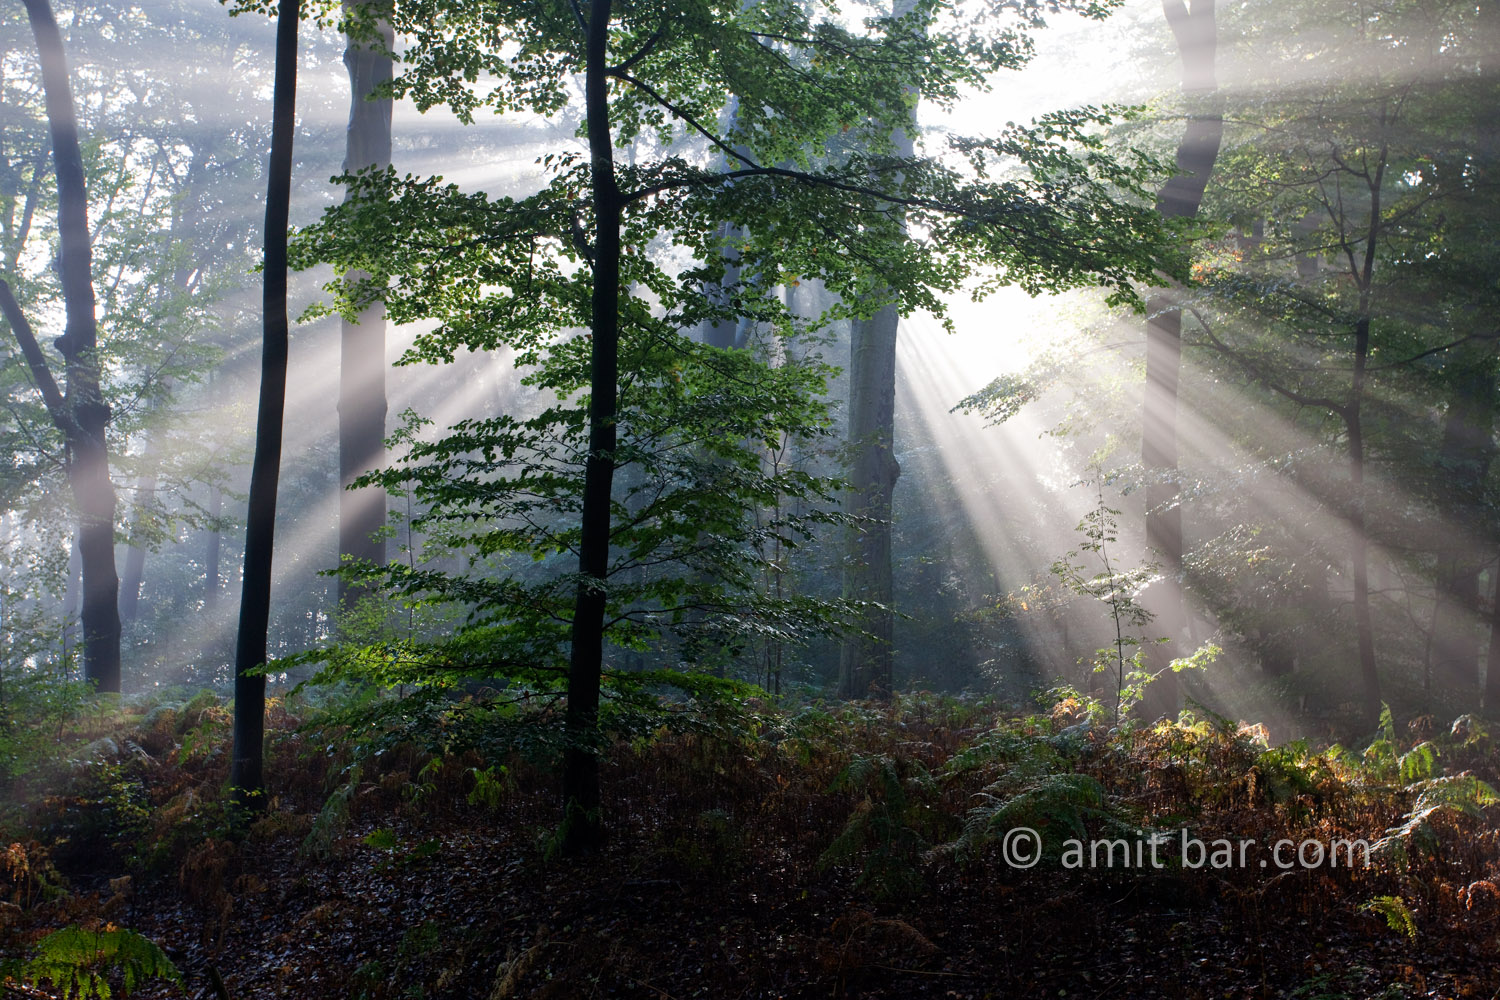 Backlight I: Backlight in the forest of Slangenburg, The Netherlands 